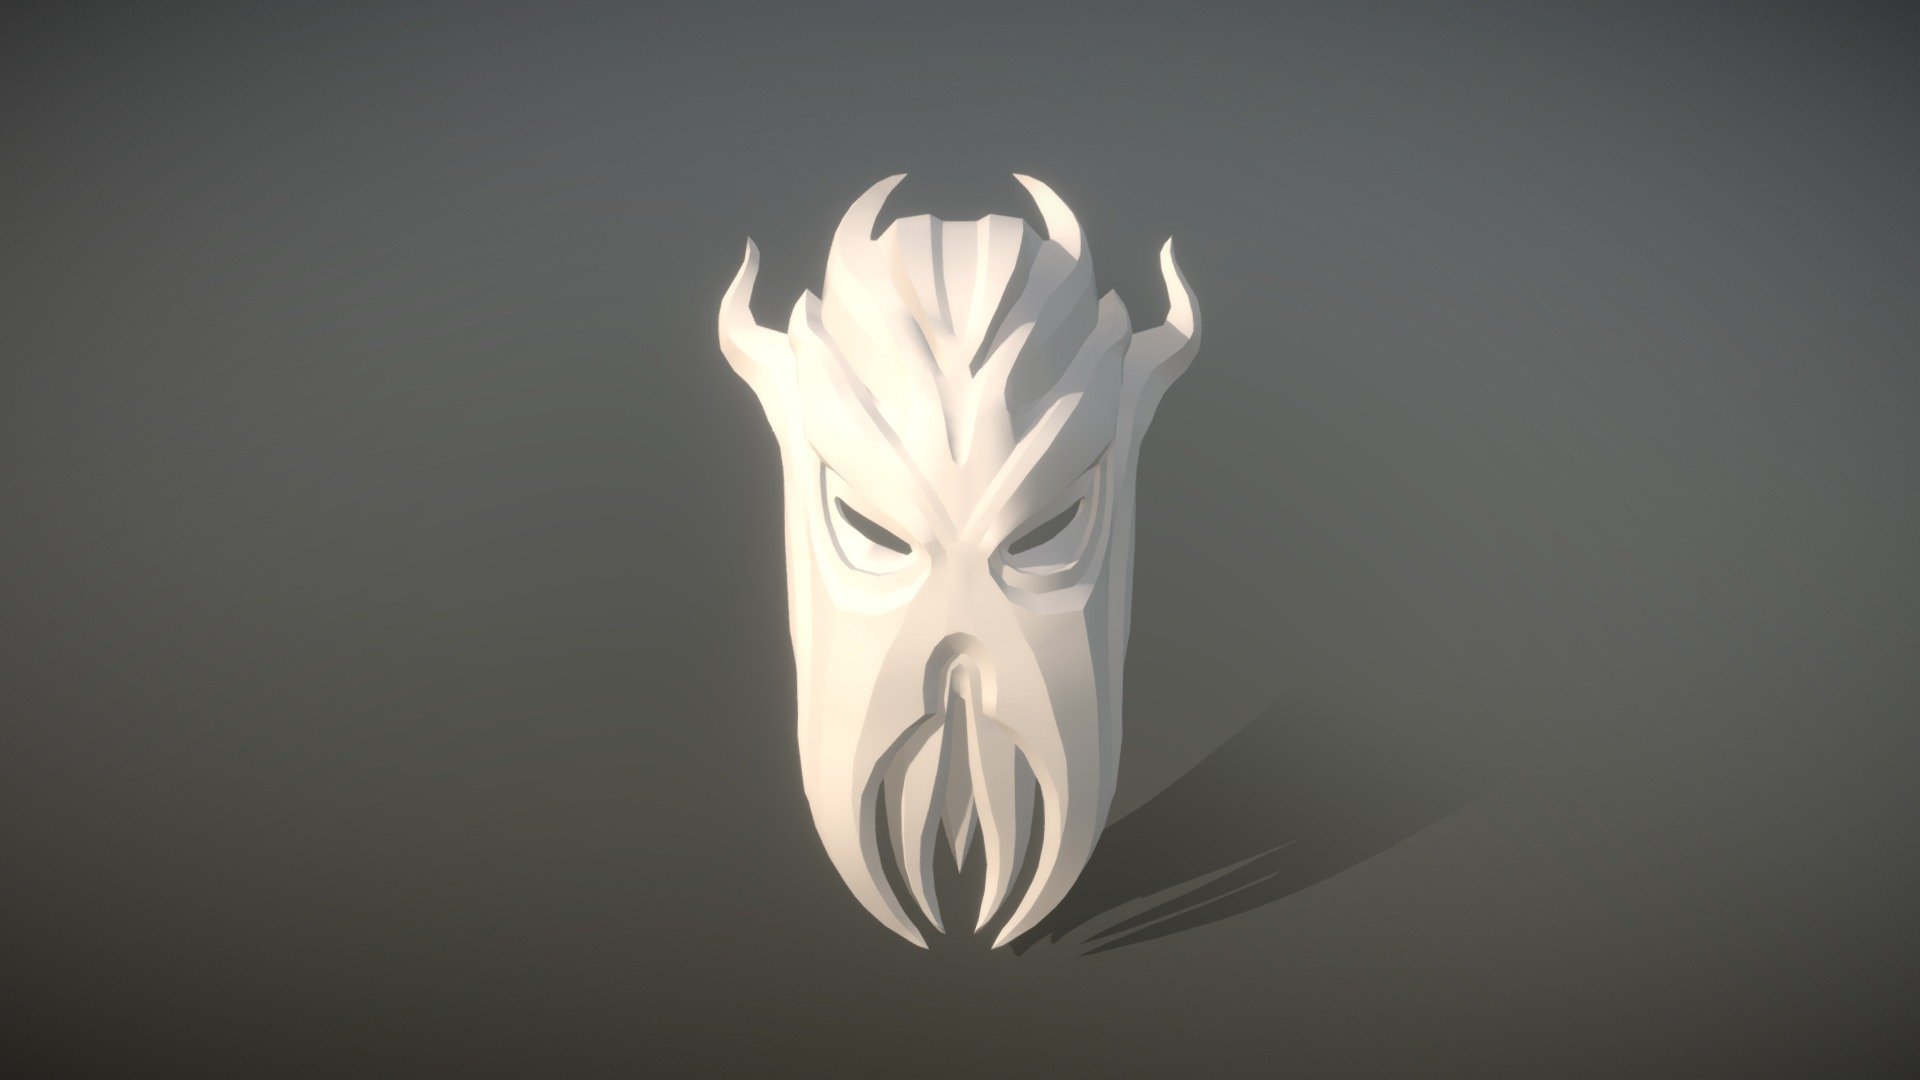 Miraak's Mask - 3D model by TentakelSpektakel [2c92f34] - Sketchfab